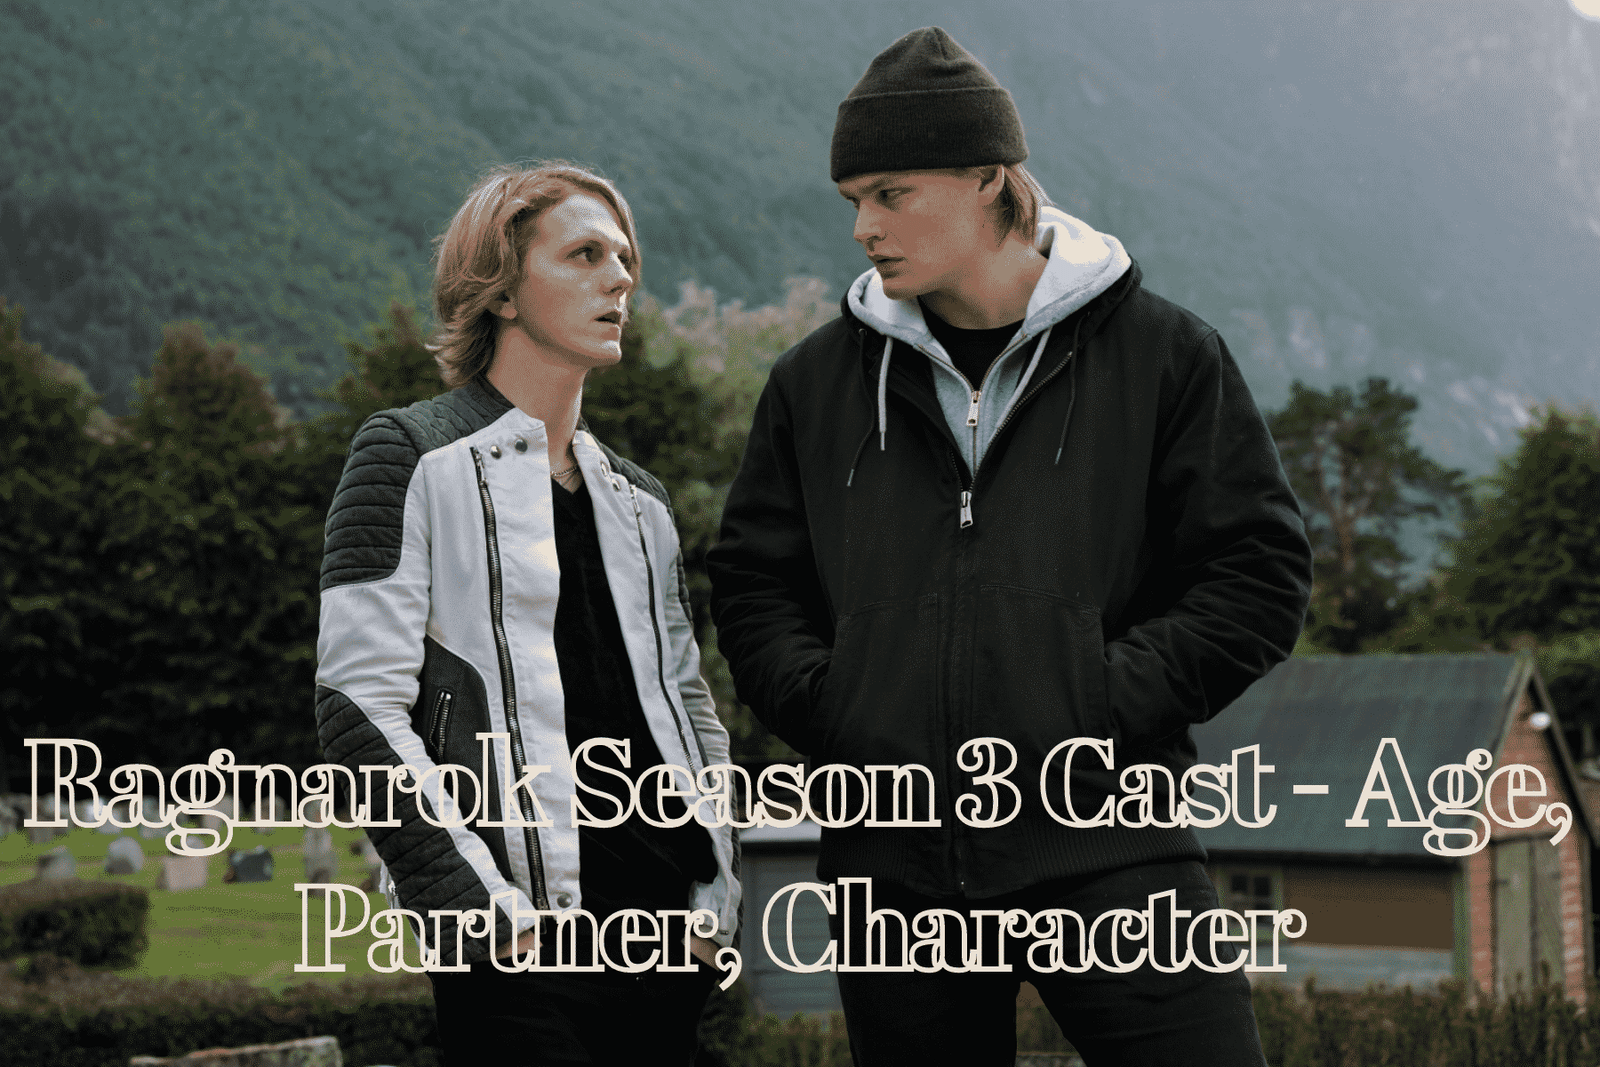 Ragnarok Season 3 Cast - Age, Partner, Character